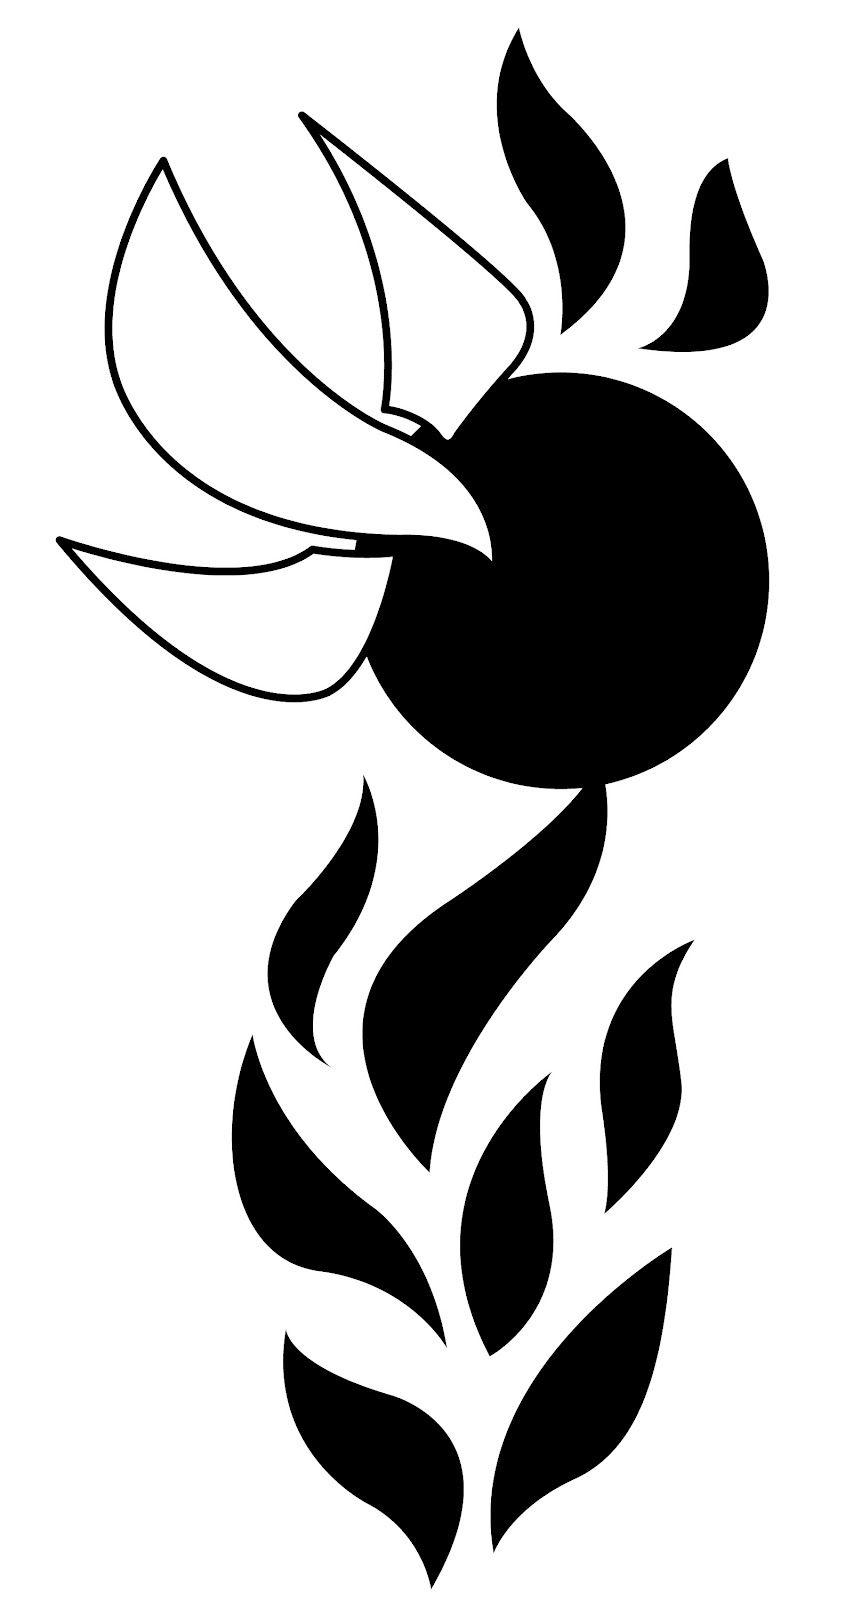 Spirit Black and White Logo - Free Spirit Clipart, Download Free Clip Art, Free Clip Art